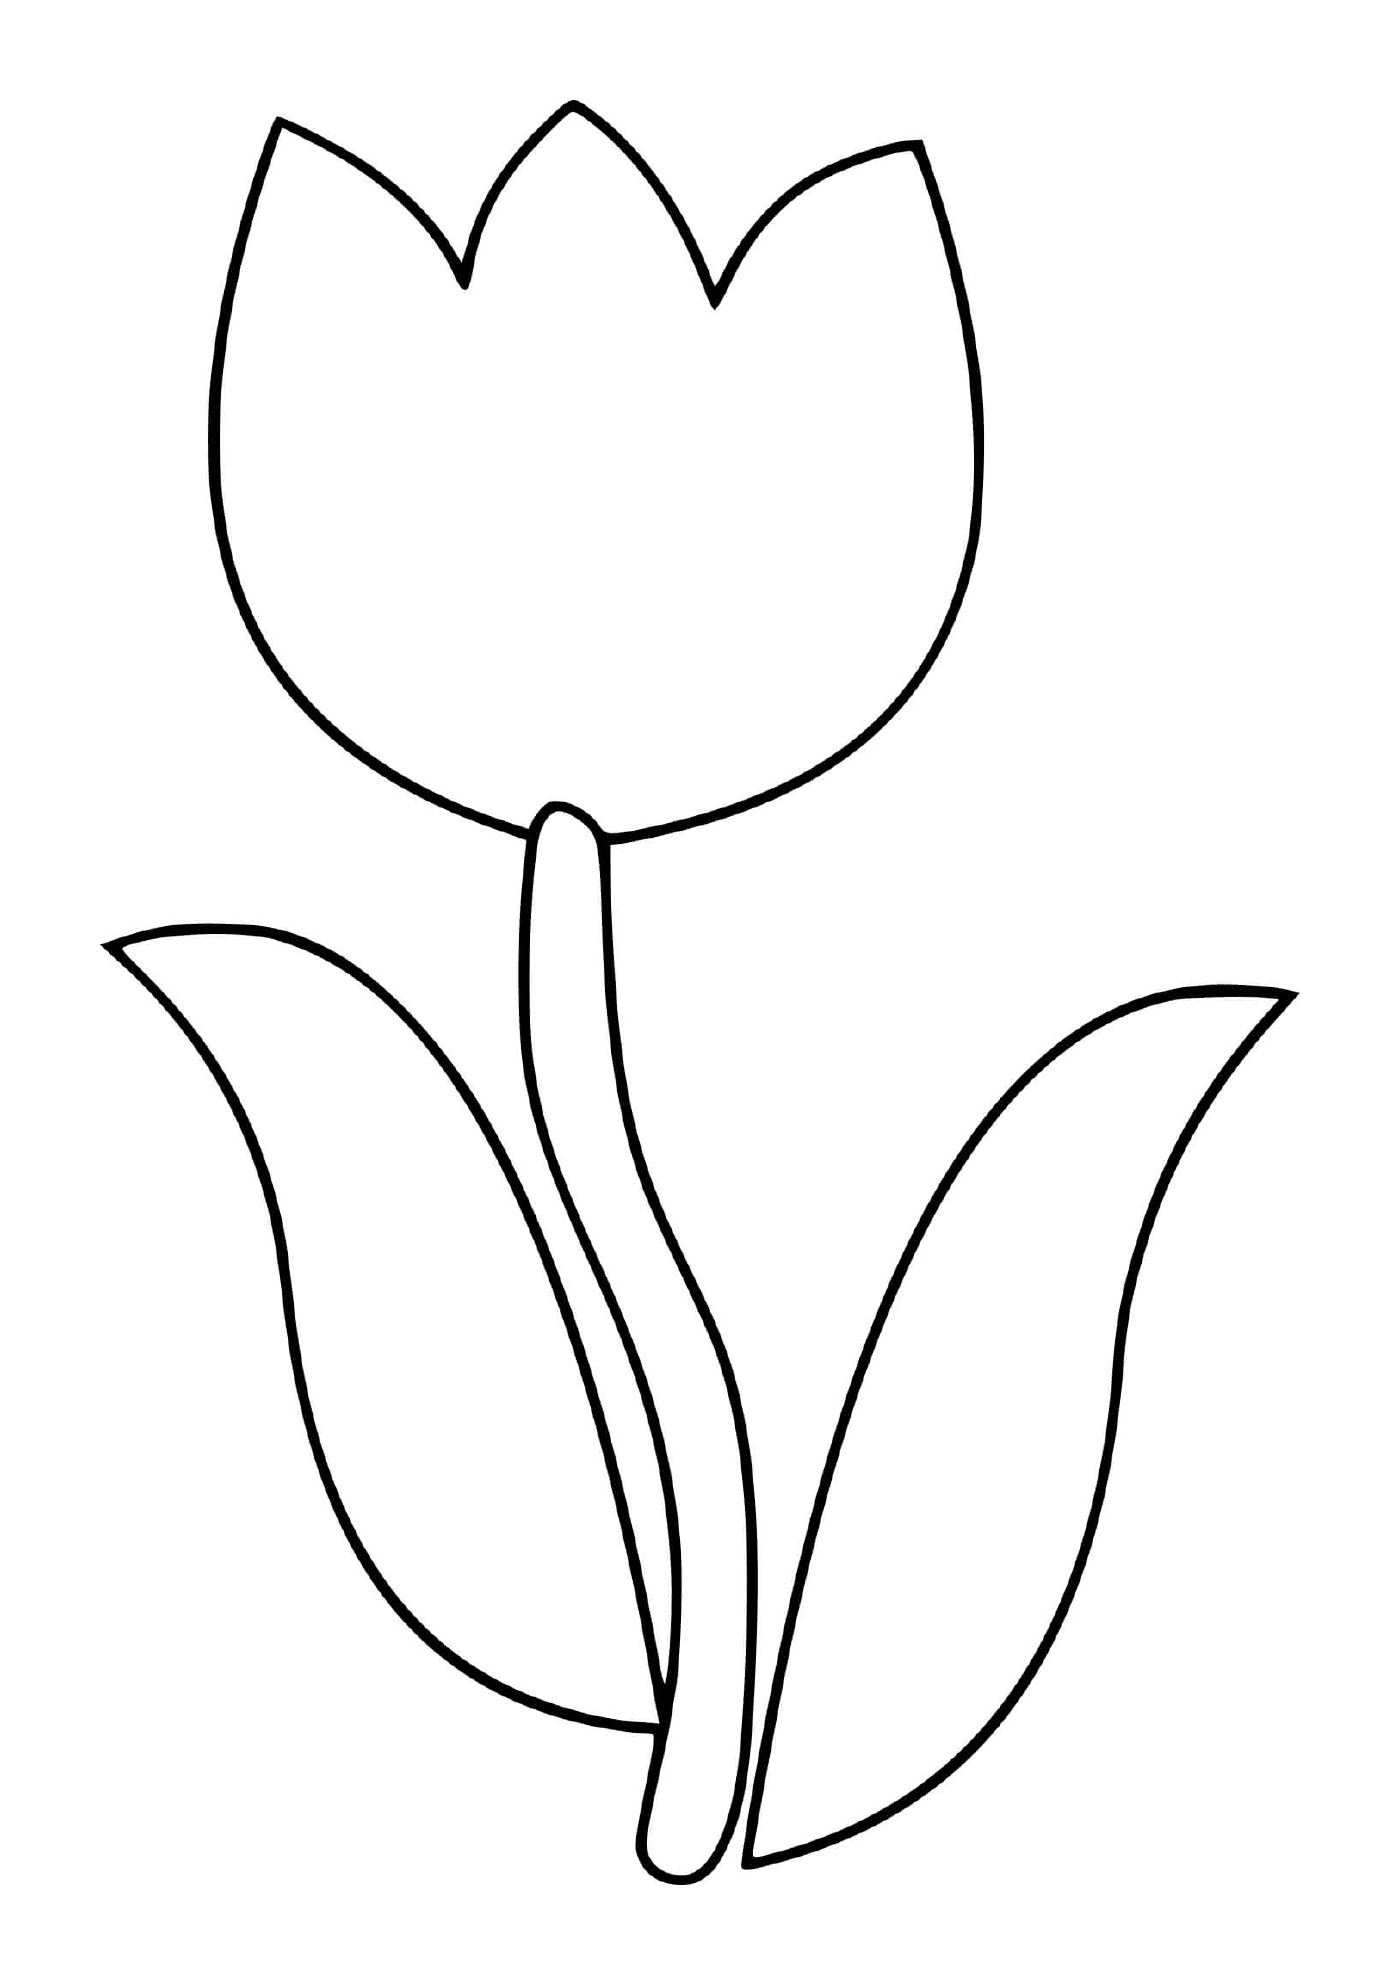  Semplice fiore di tulipano 